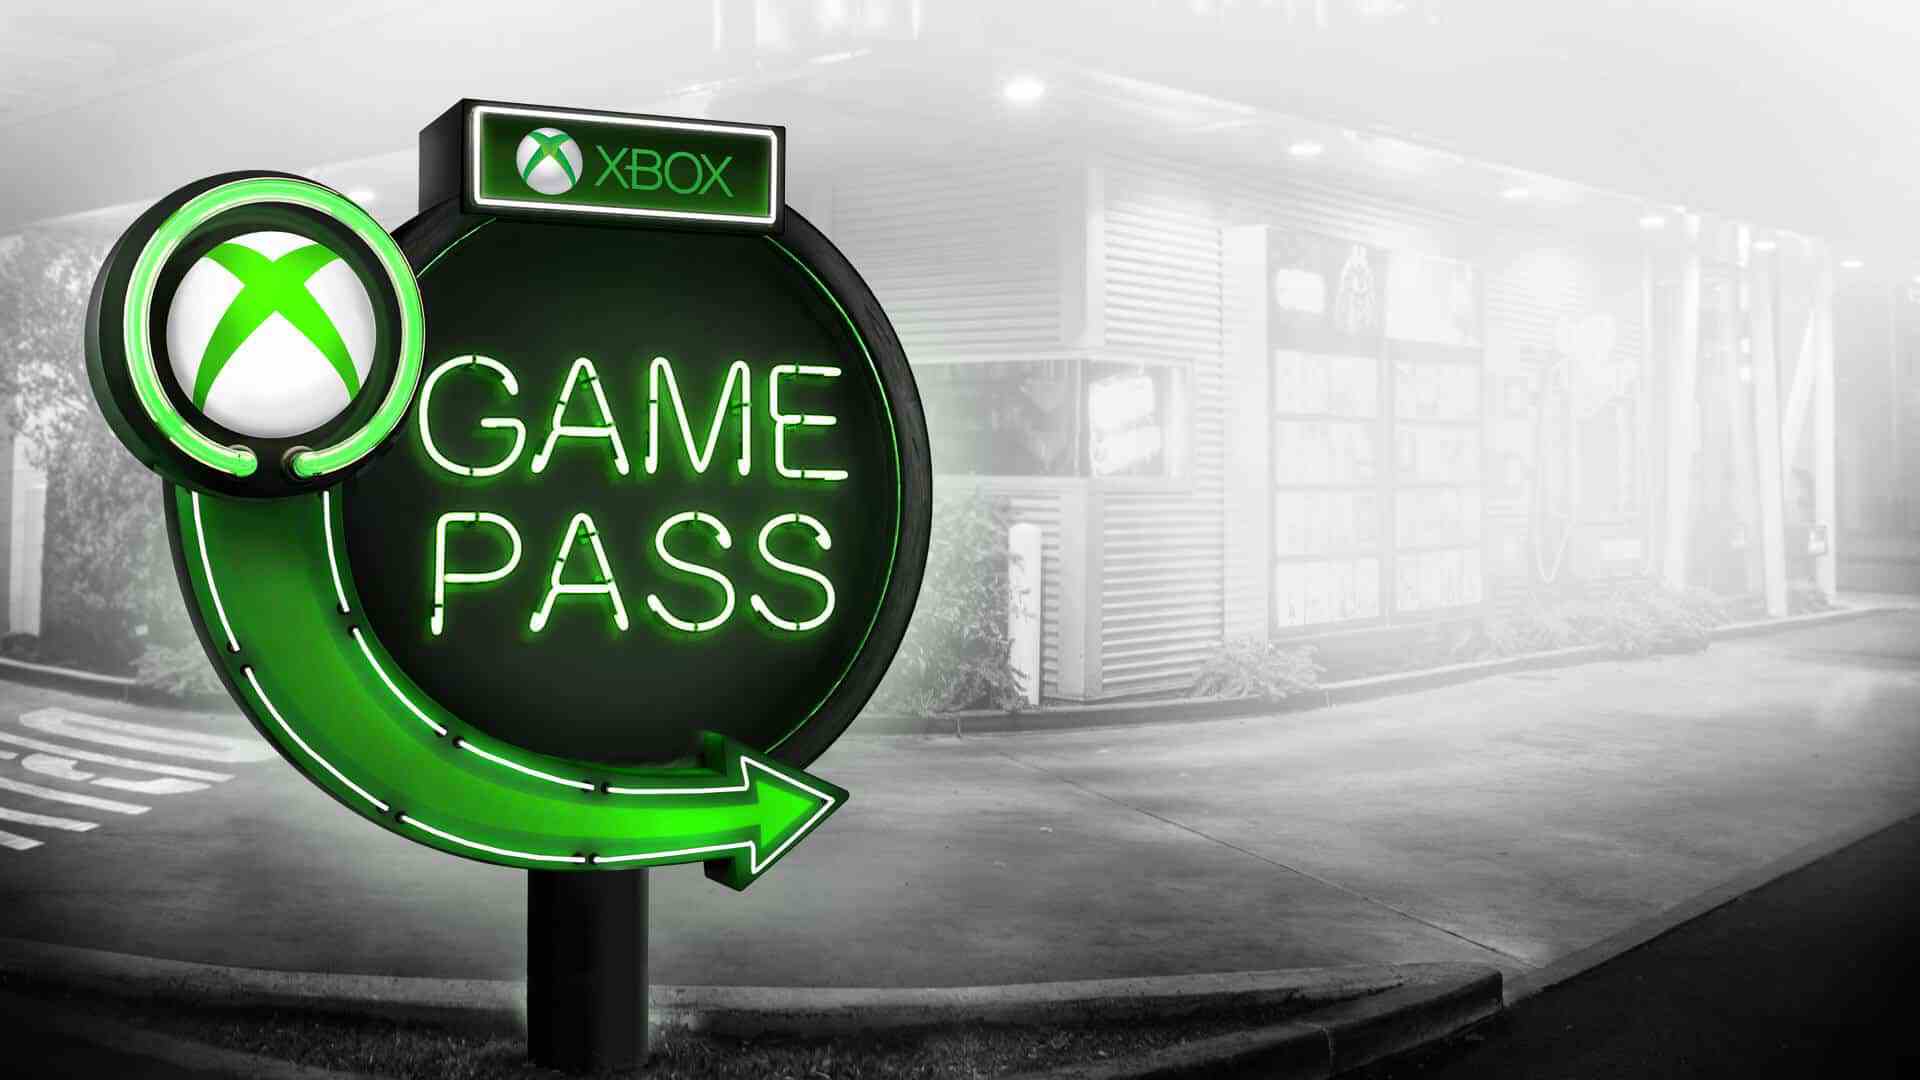 Xbox Game Pass mei 2022 voegt nog een flink aantal games toe